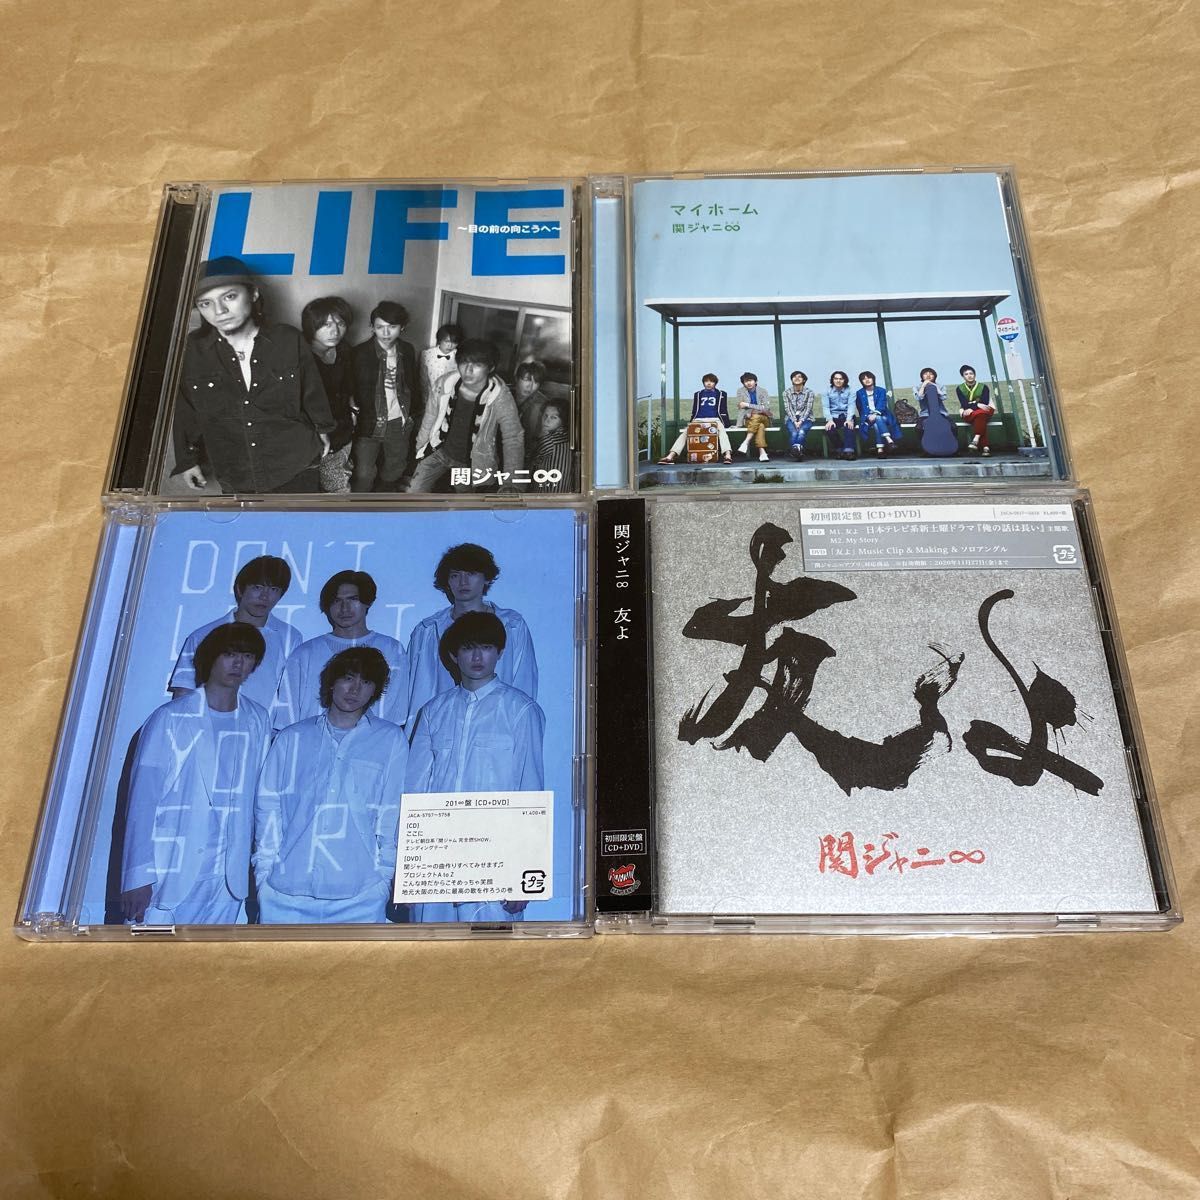 KAT-TUN 関ジャニ∞(エイト) CDアルバム3枚セット - 邦楽